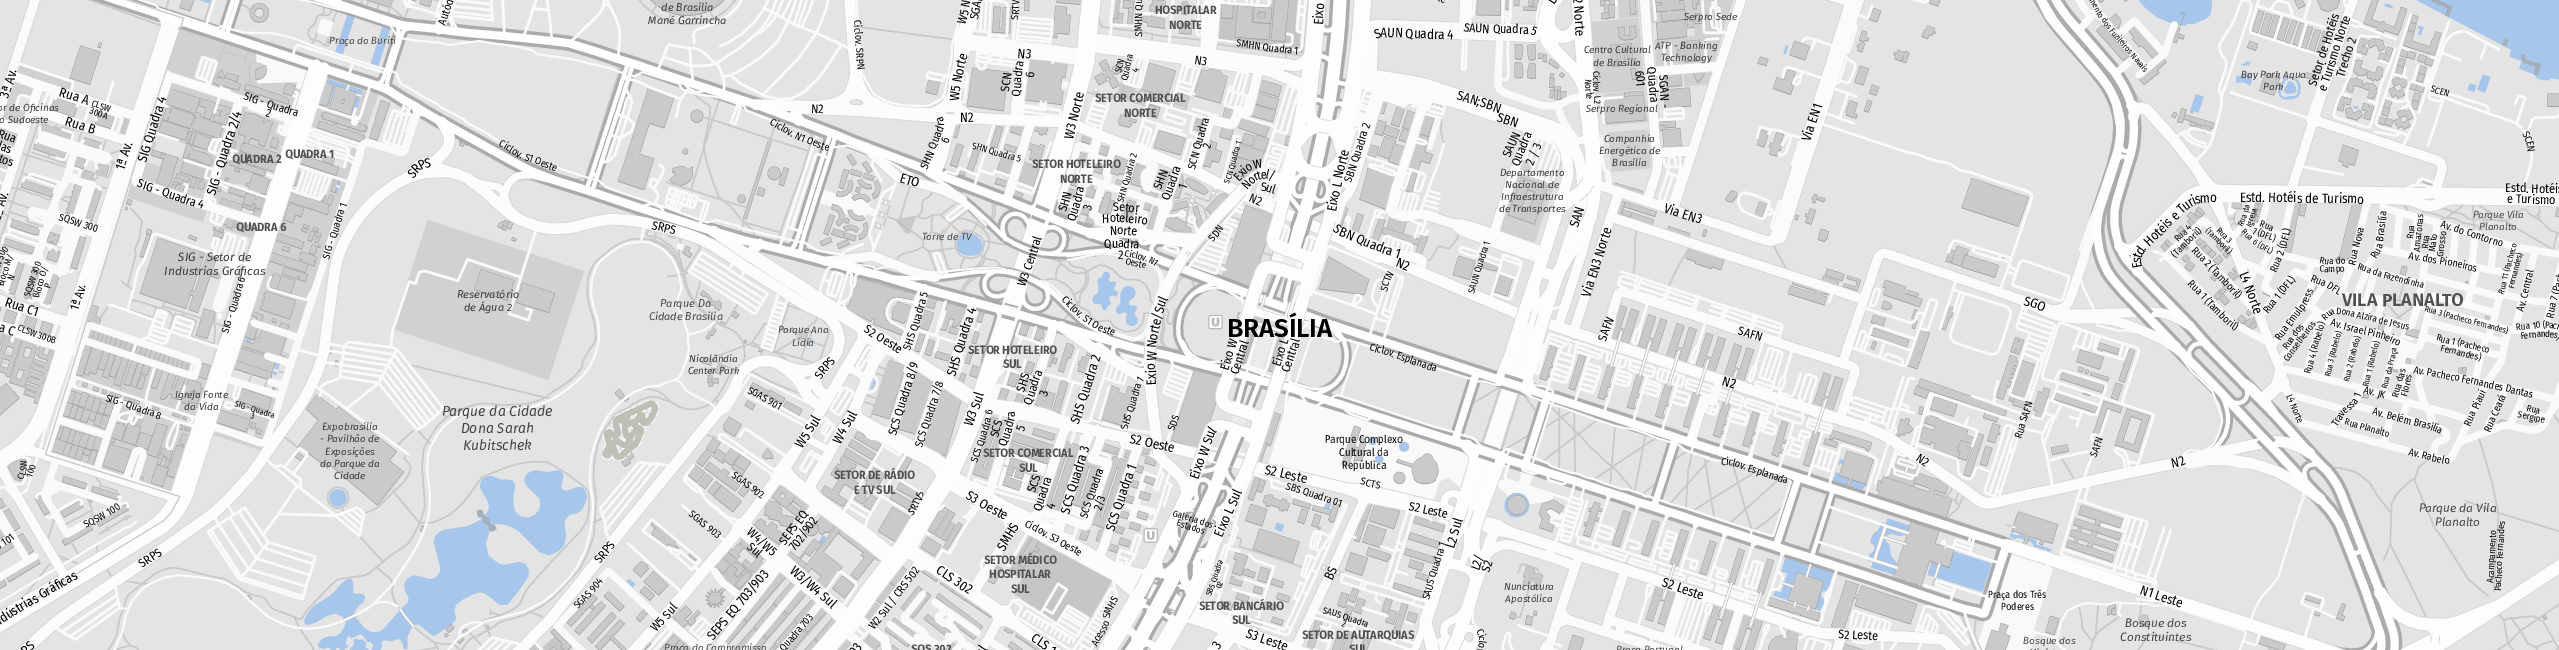 Stadtplan Brasilia zum Downloaden.